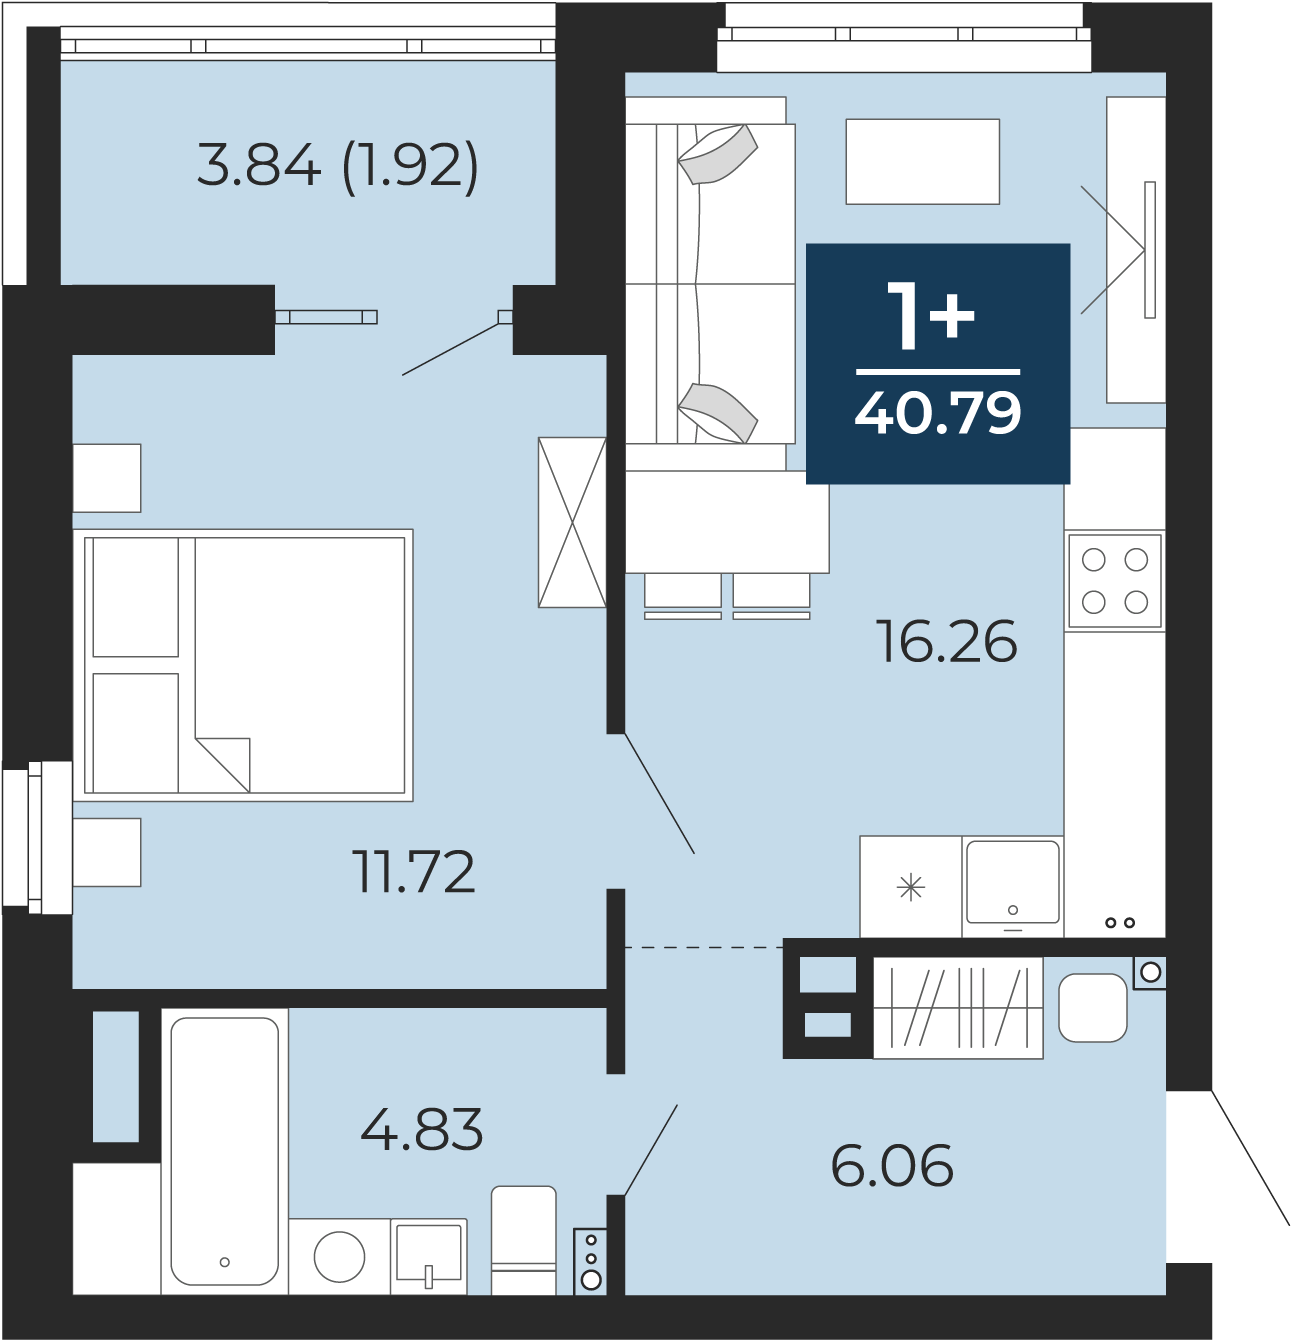 Квартира № 10, 1-комнатная, 40.79 кв. м, 2 этаж